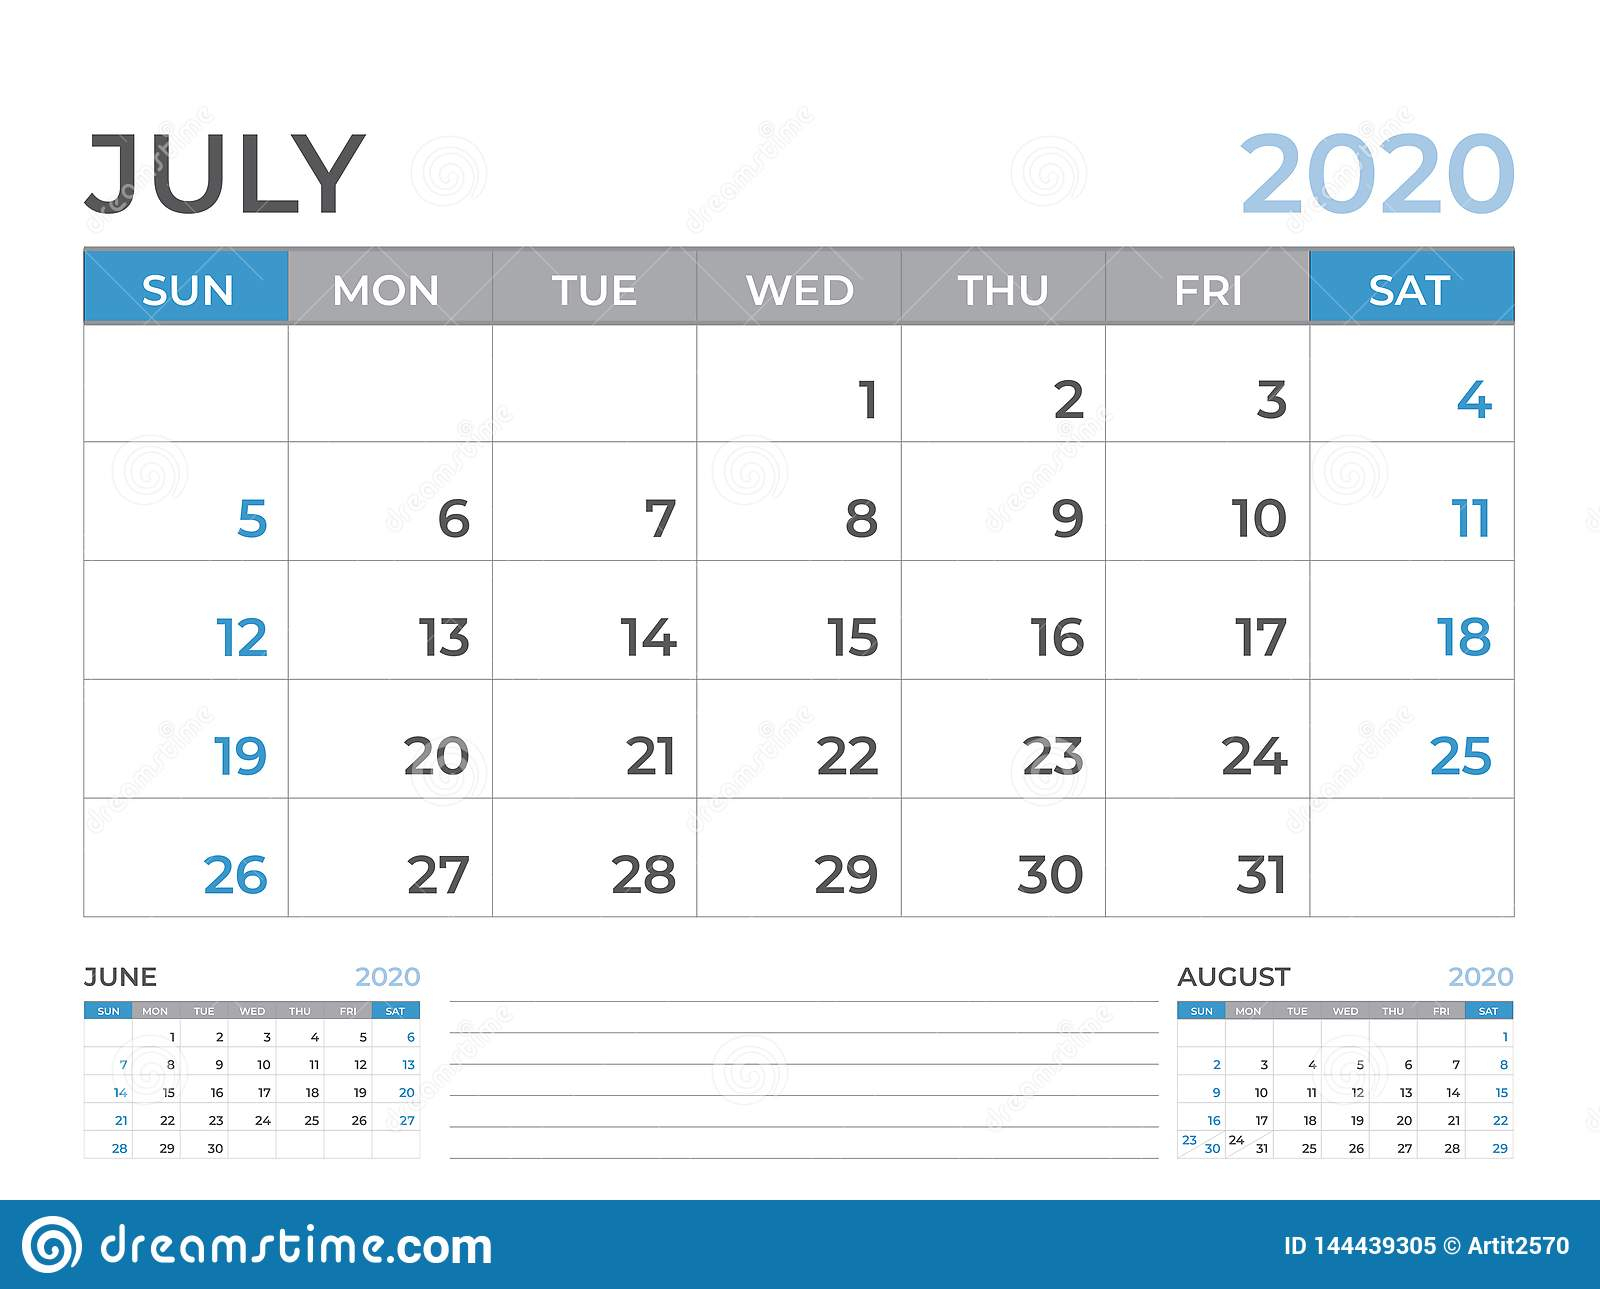 June 2020 Calendar Template, Desk Calendar Layout Size 8 X 6